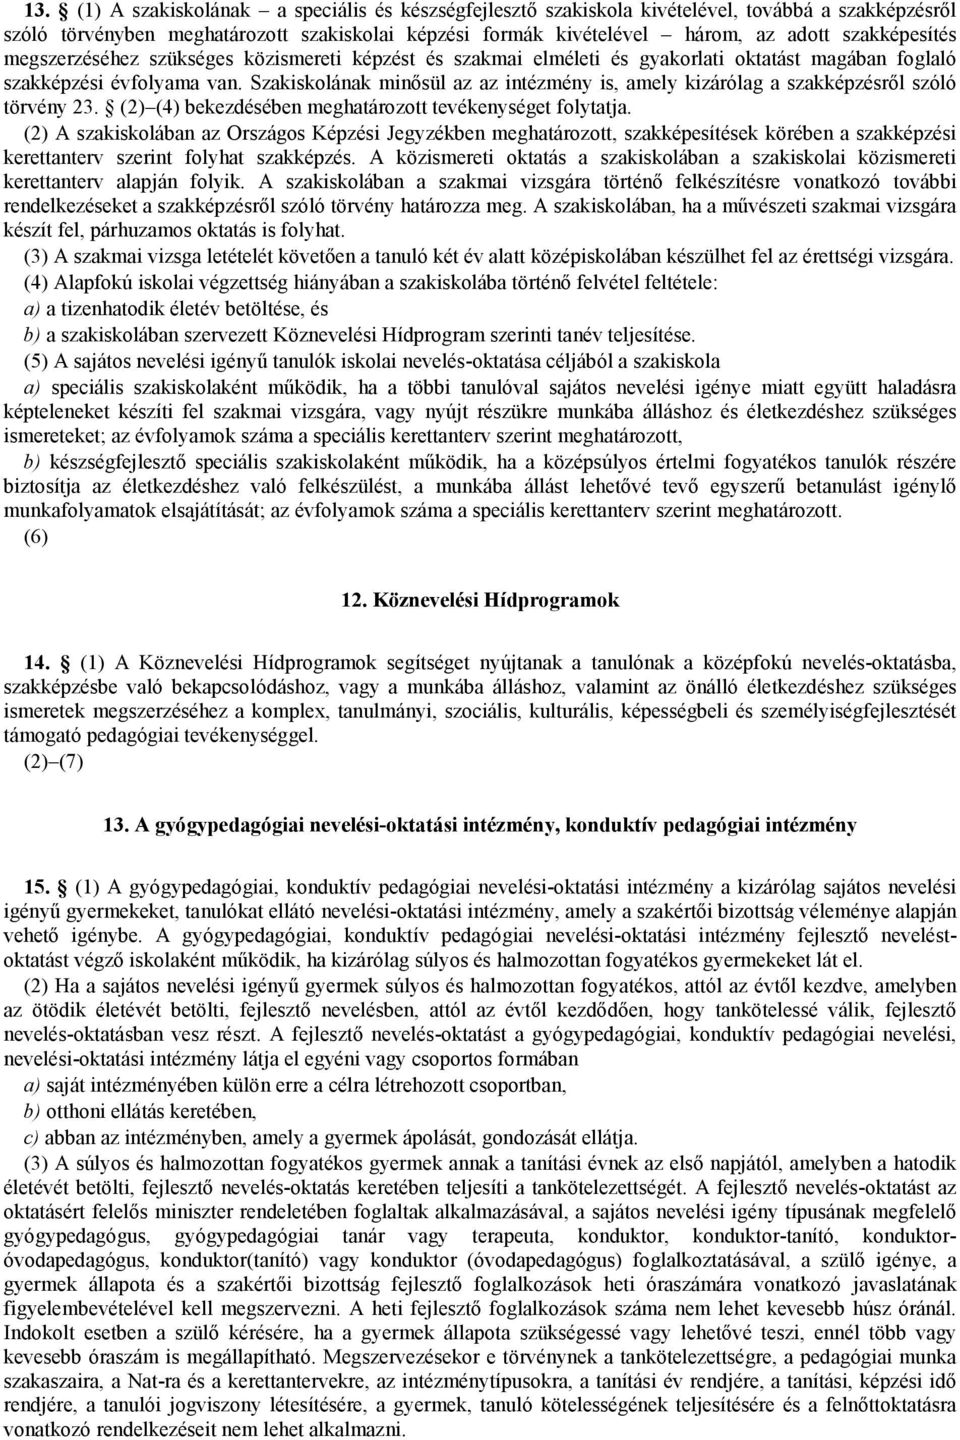 Szakiskolának minősül az az intézmény is, amely kizárólag a szakképzésről szóló törvény 23. (2) (4) bekezdésében meghatározott tevékenységet folytatja.